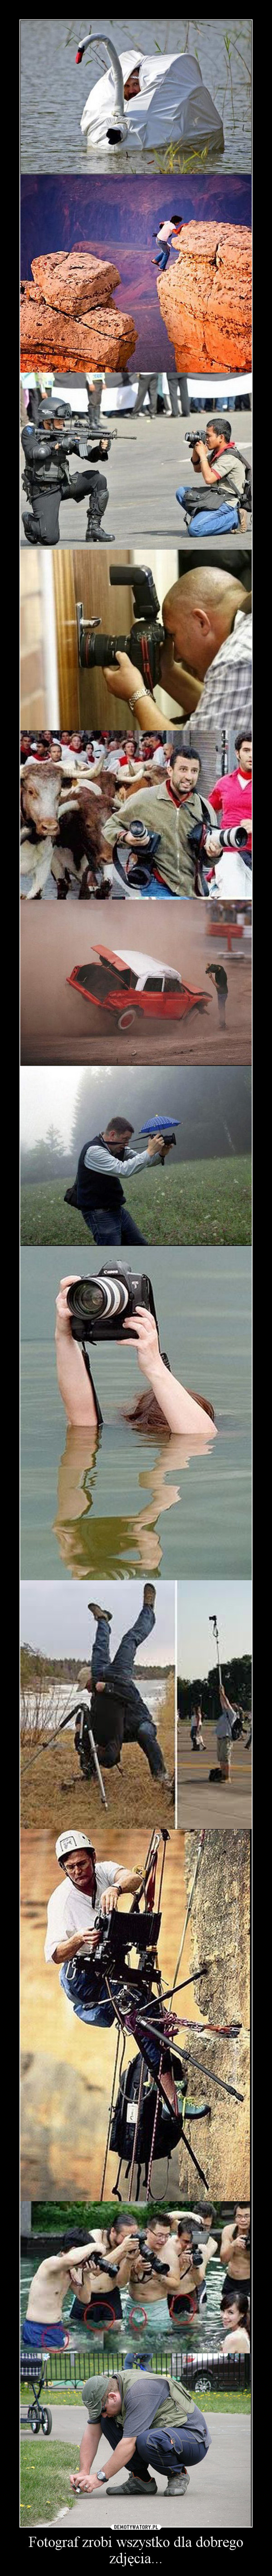 Fotograf zrobi wszystko dla dobrego zdjęcia... –  